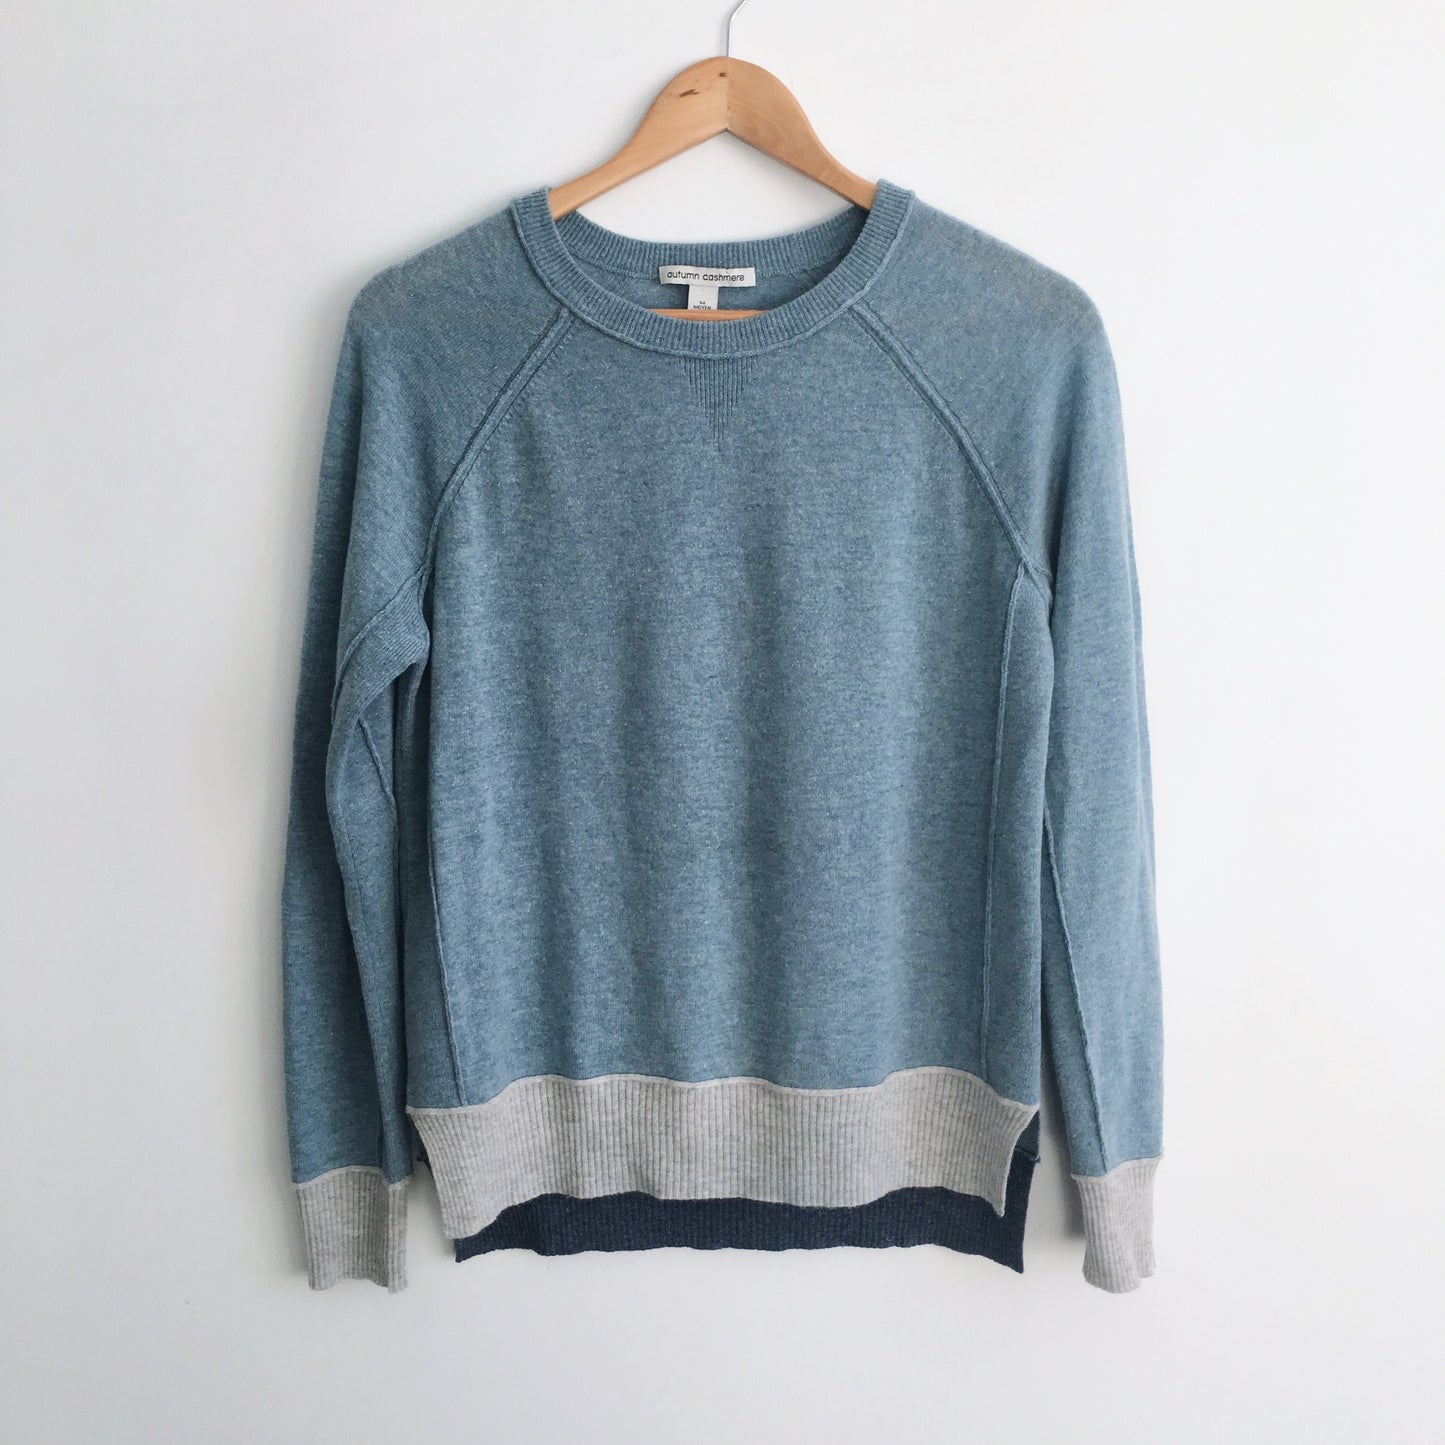 Autumn Cashmere Crewneck Sweater - size Medium